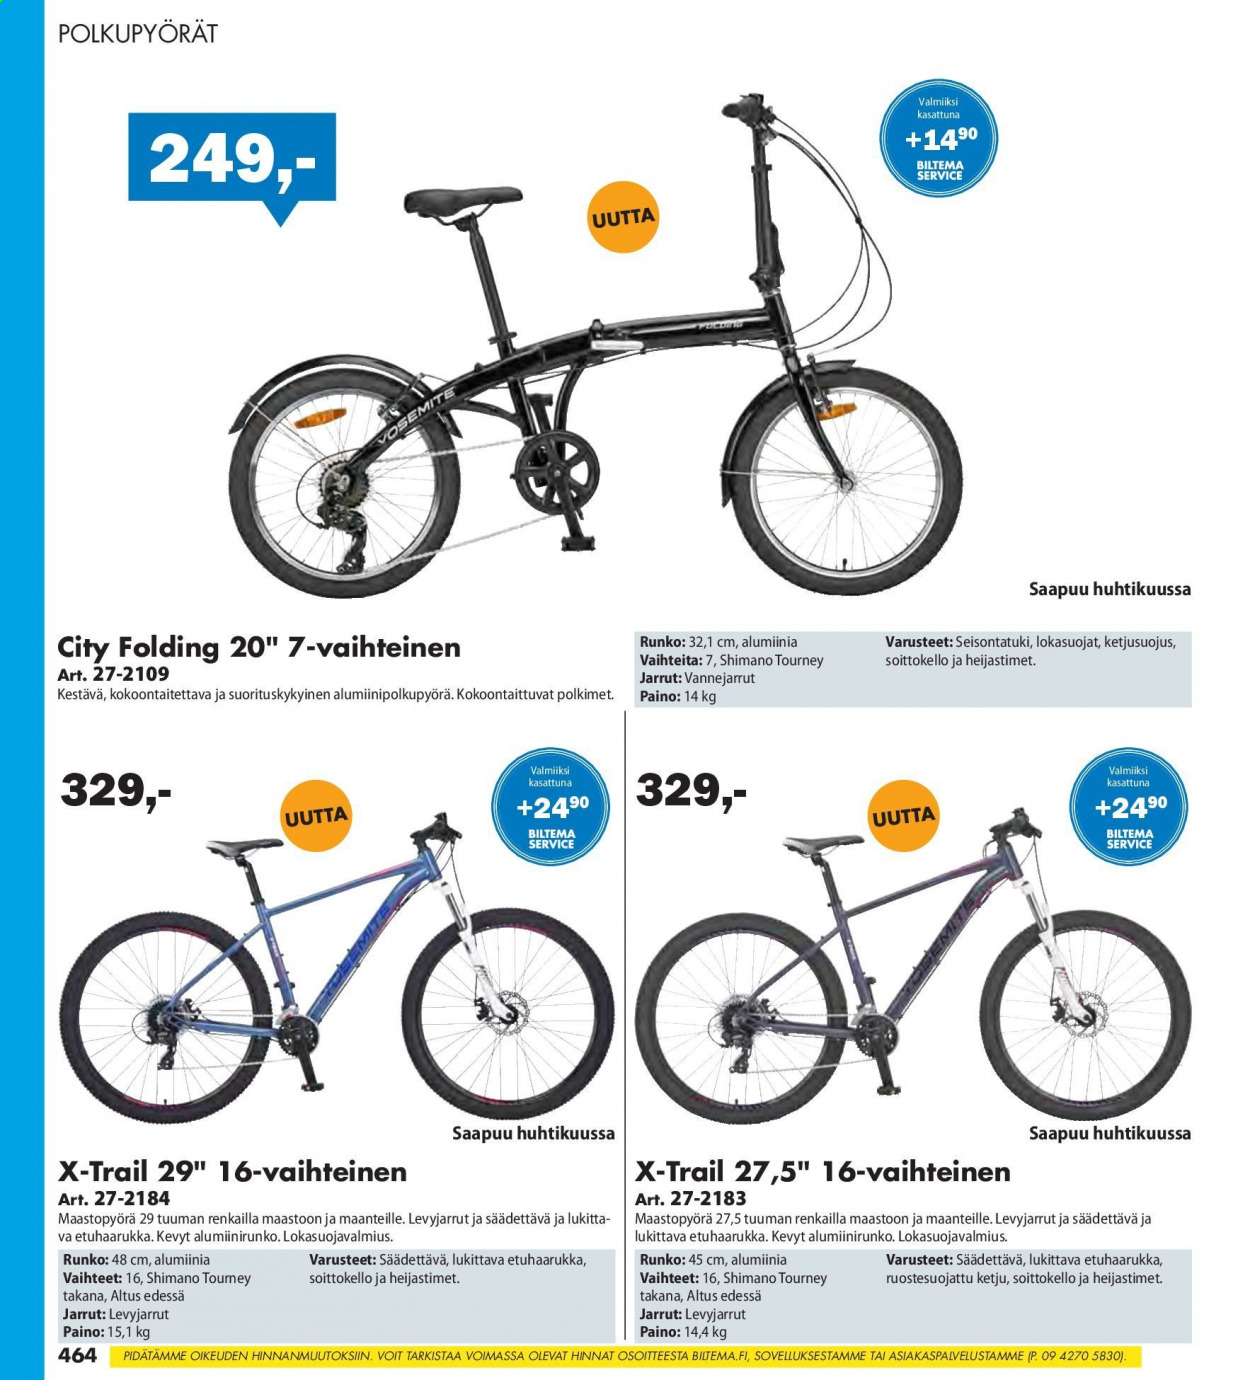 Biltema tarjoukset  - Tarjoustuotteet - maastopyörä, polkupyörät, shimano. Sivu 464.